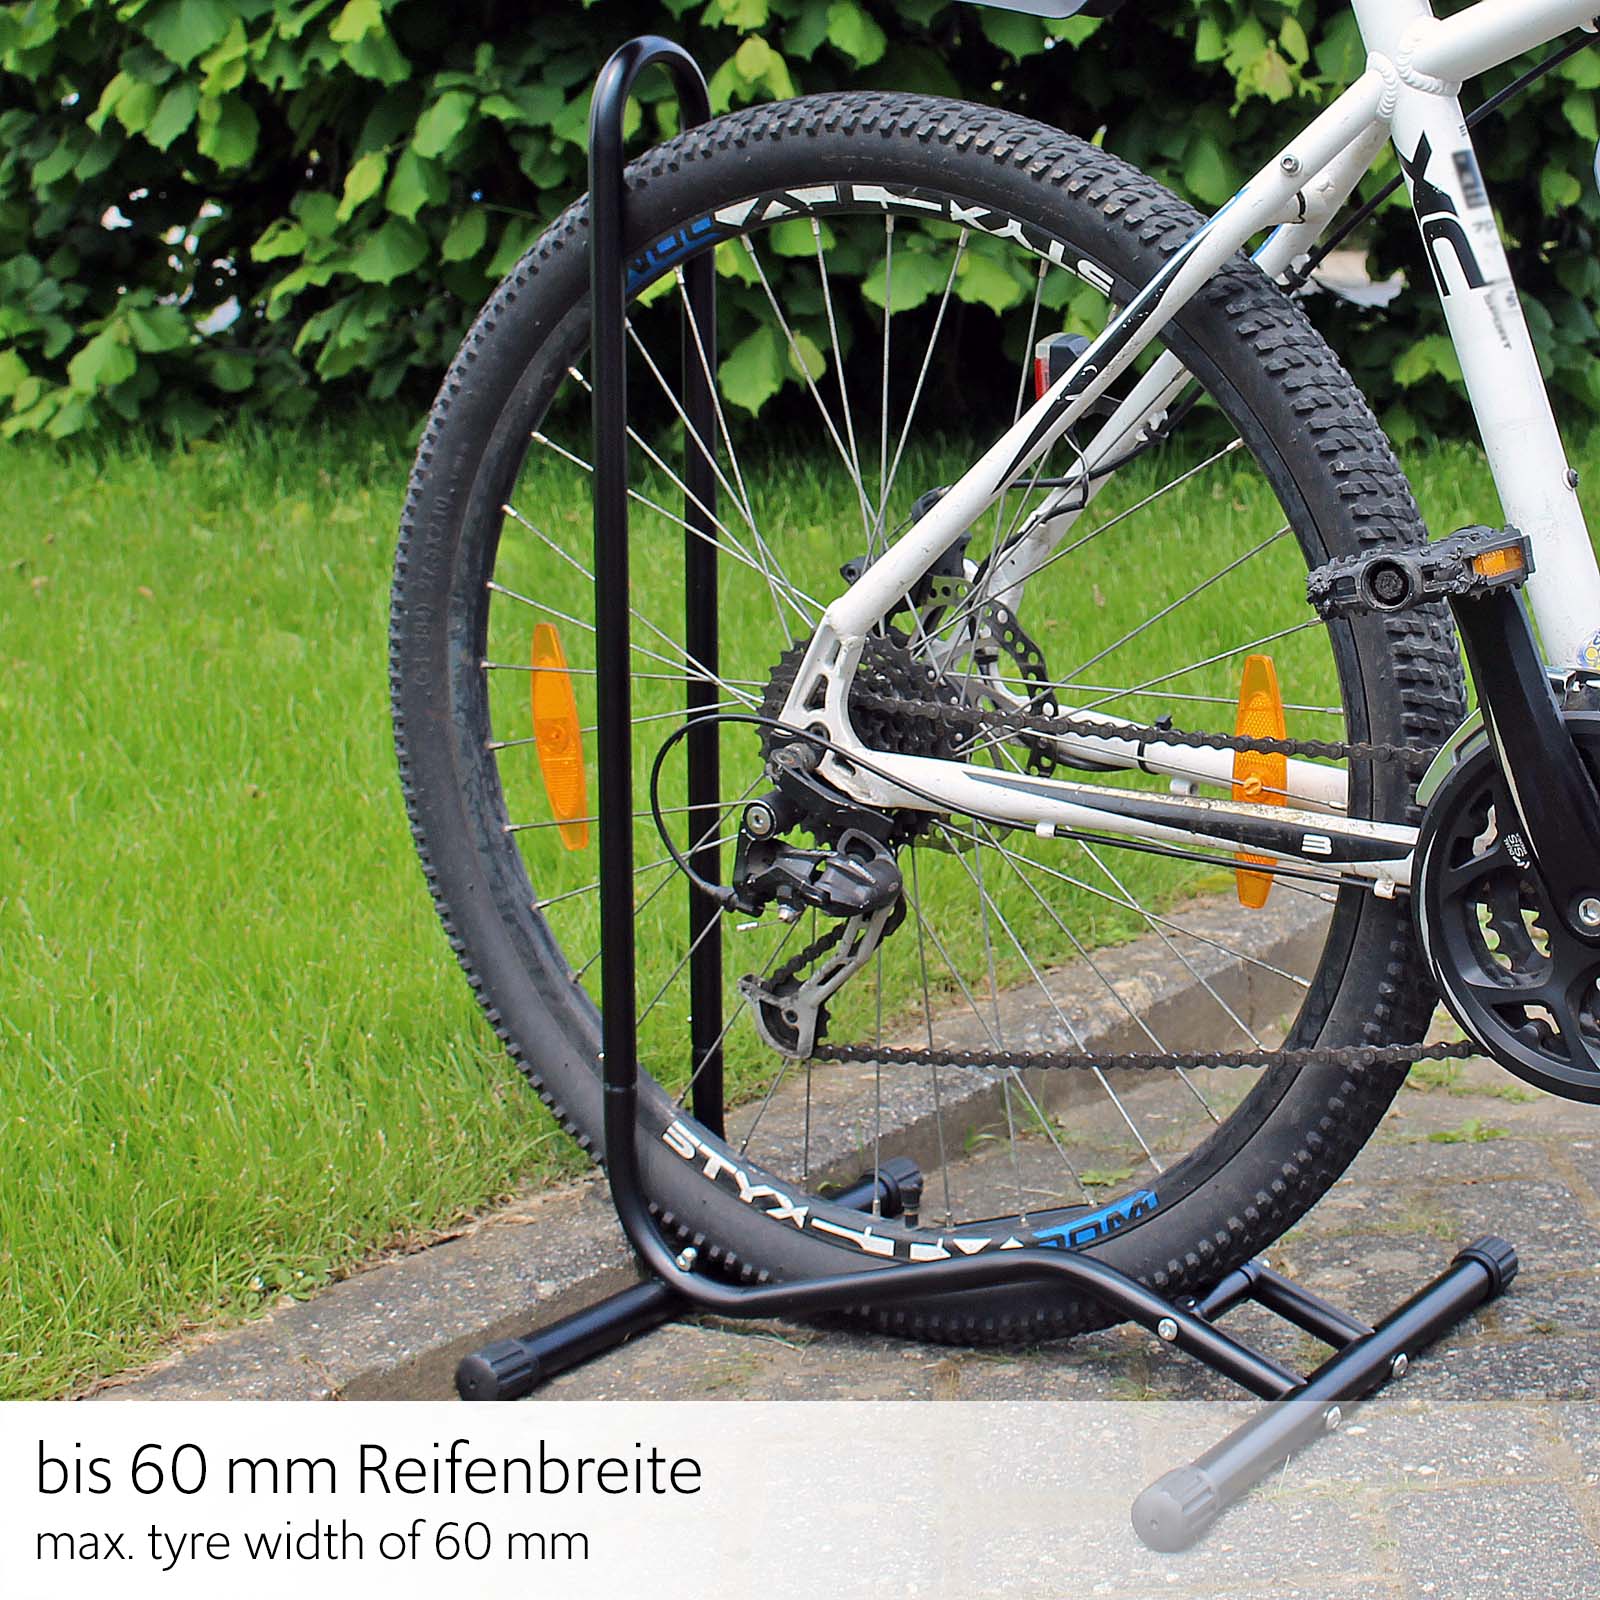 Béquille de vélo et contre plaque pour béquille sur cadre bicyclette